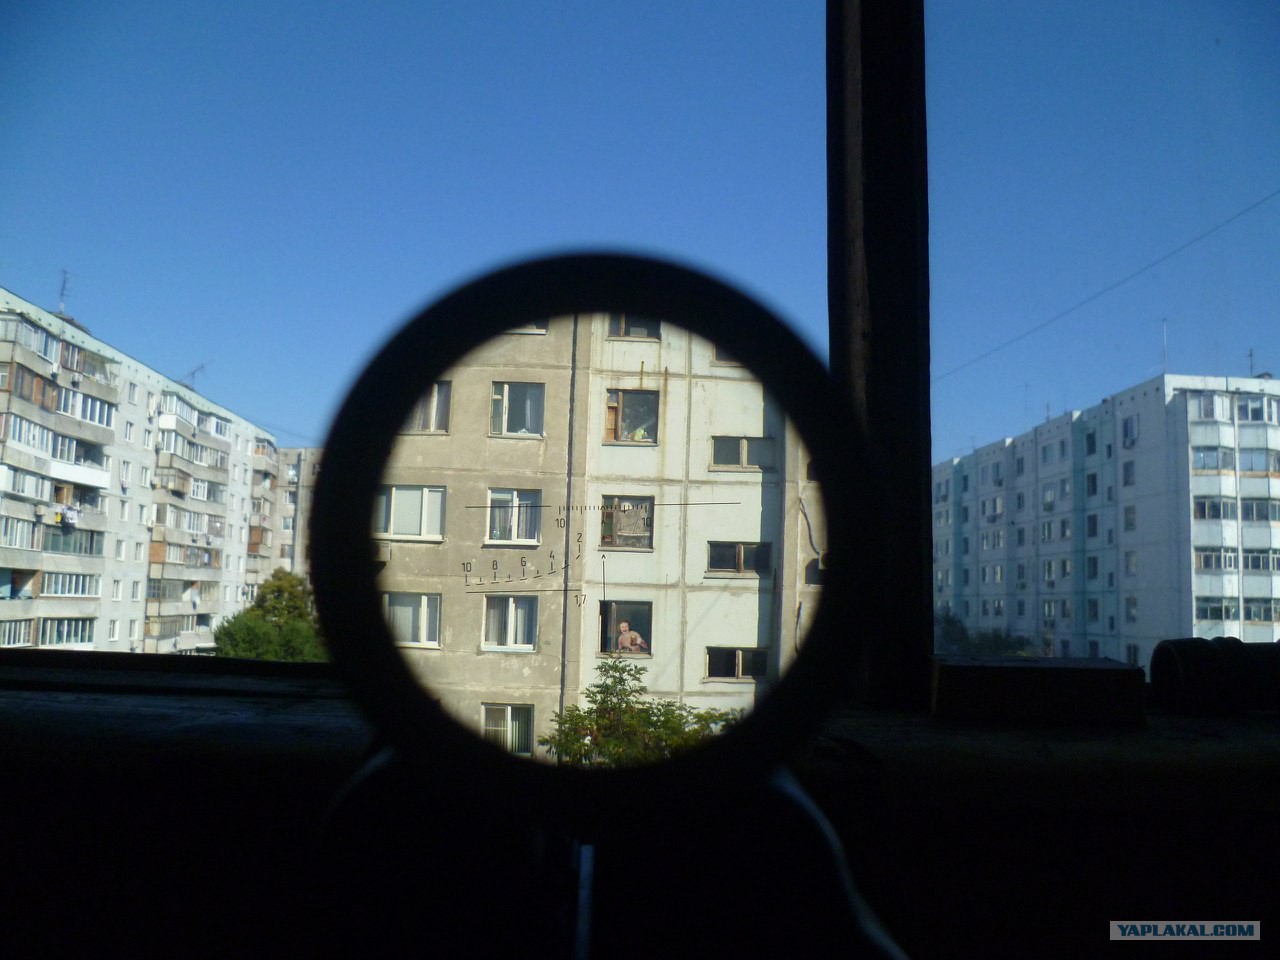 Наблюдать через окно. Окна через бинокль. Наблюдение в окно. Окно в доме напротив. Бинокль подгляд окна.